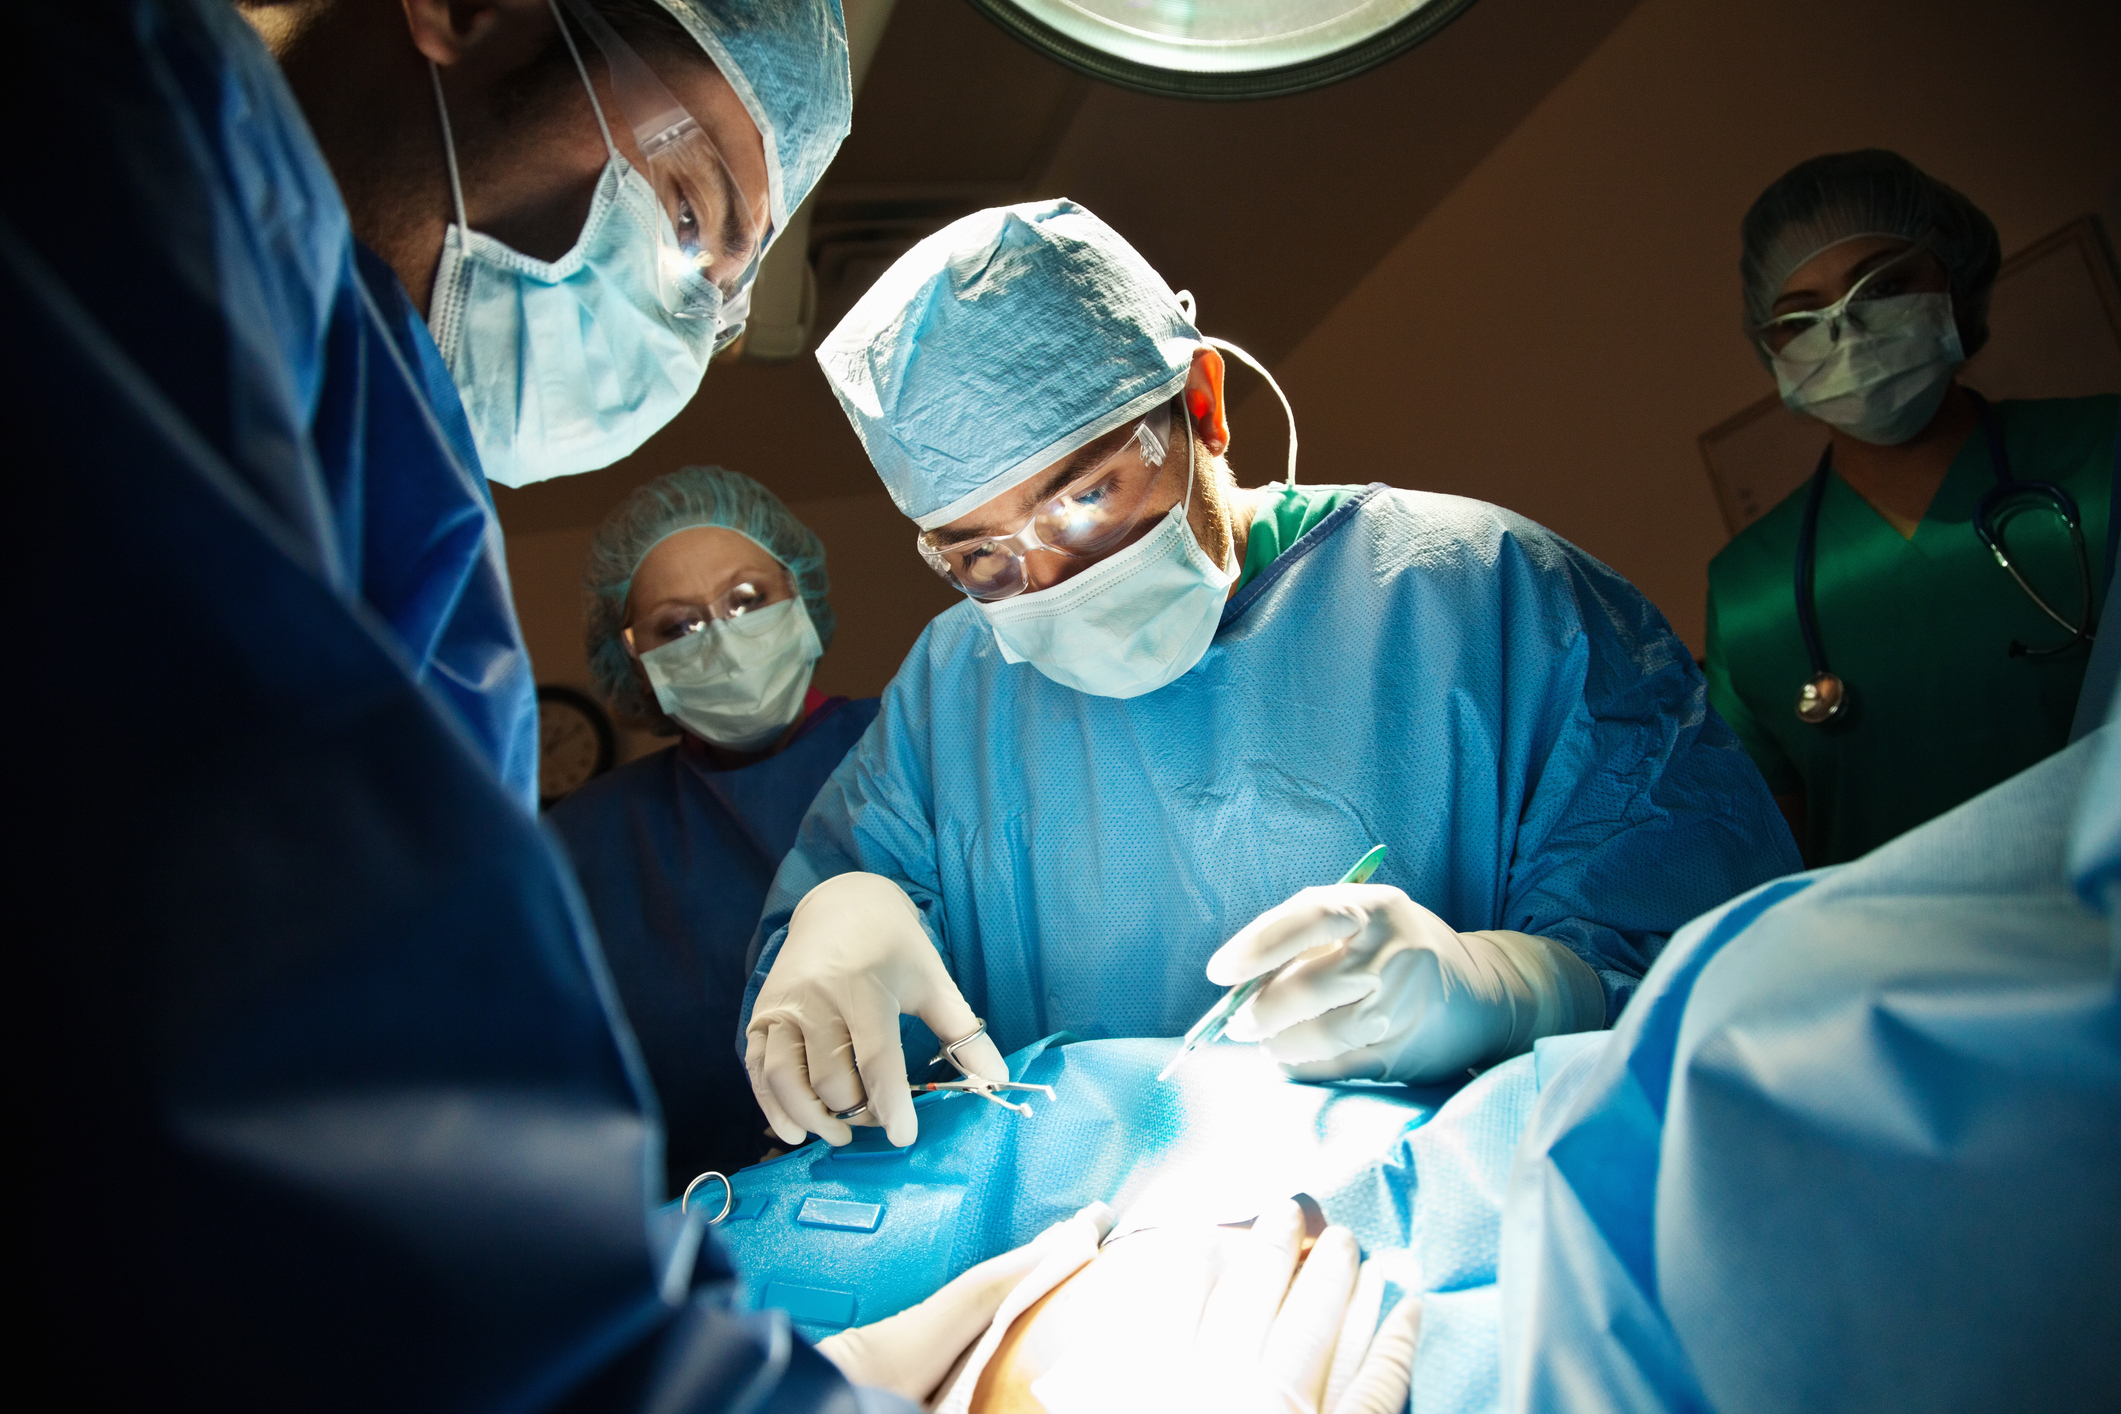 cirurgia cesariana. Na foto, é possível ver um médico manipulando instrumentos na mesa de cirurgia e outros profissionais ajudando. Estão usando roupa de proteção azul, máscara e touca.